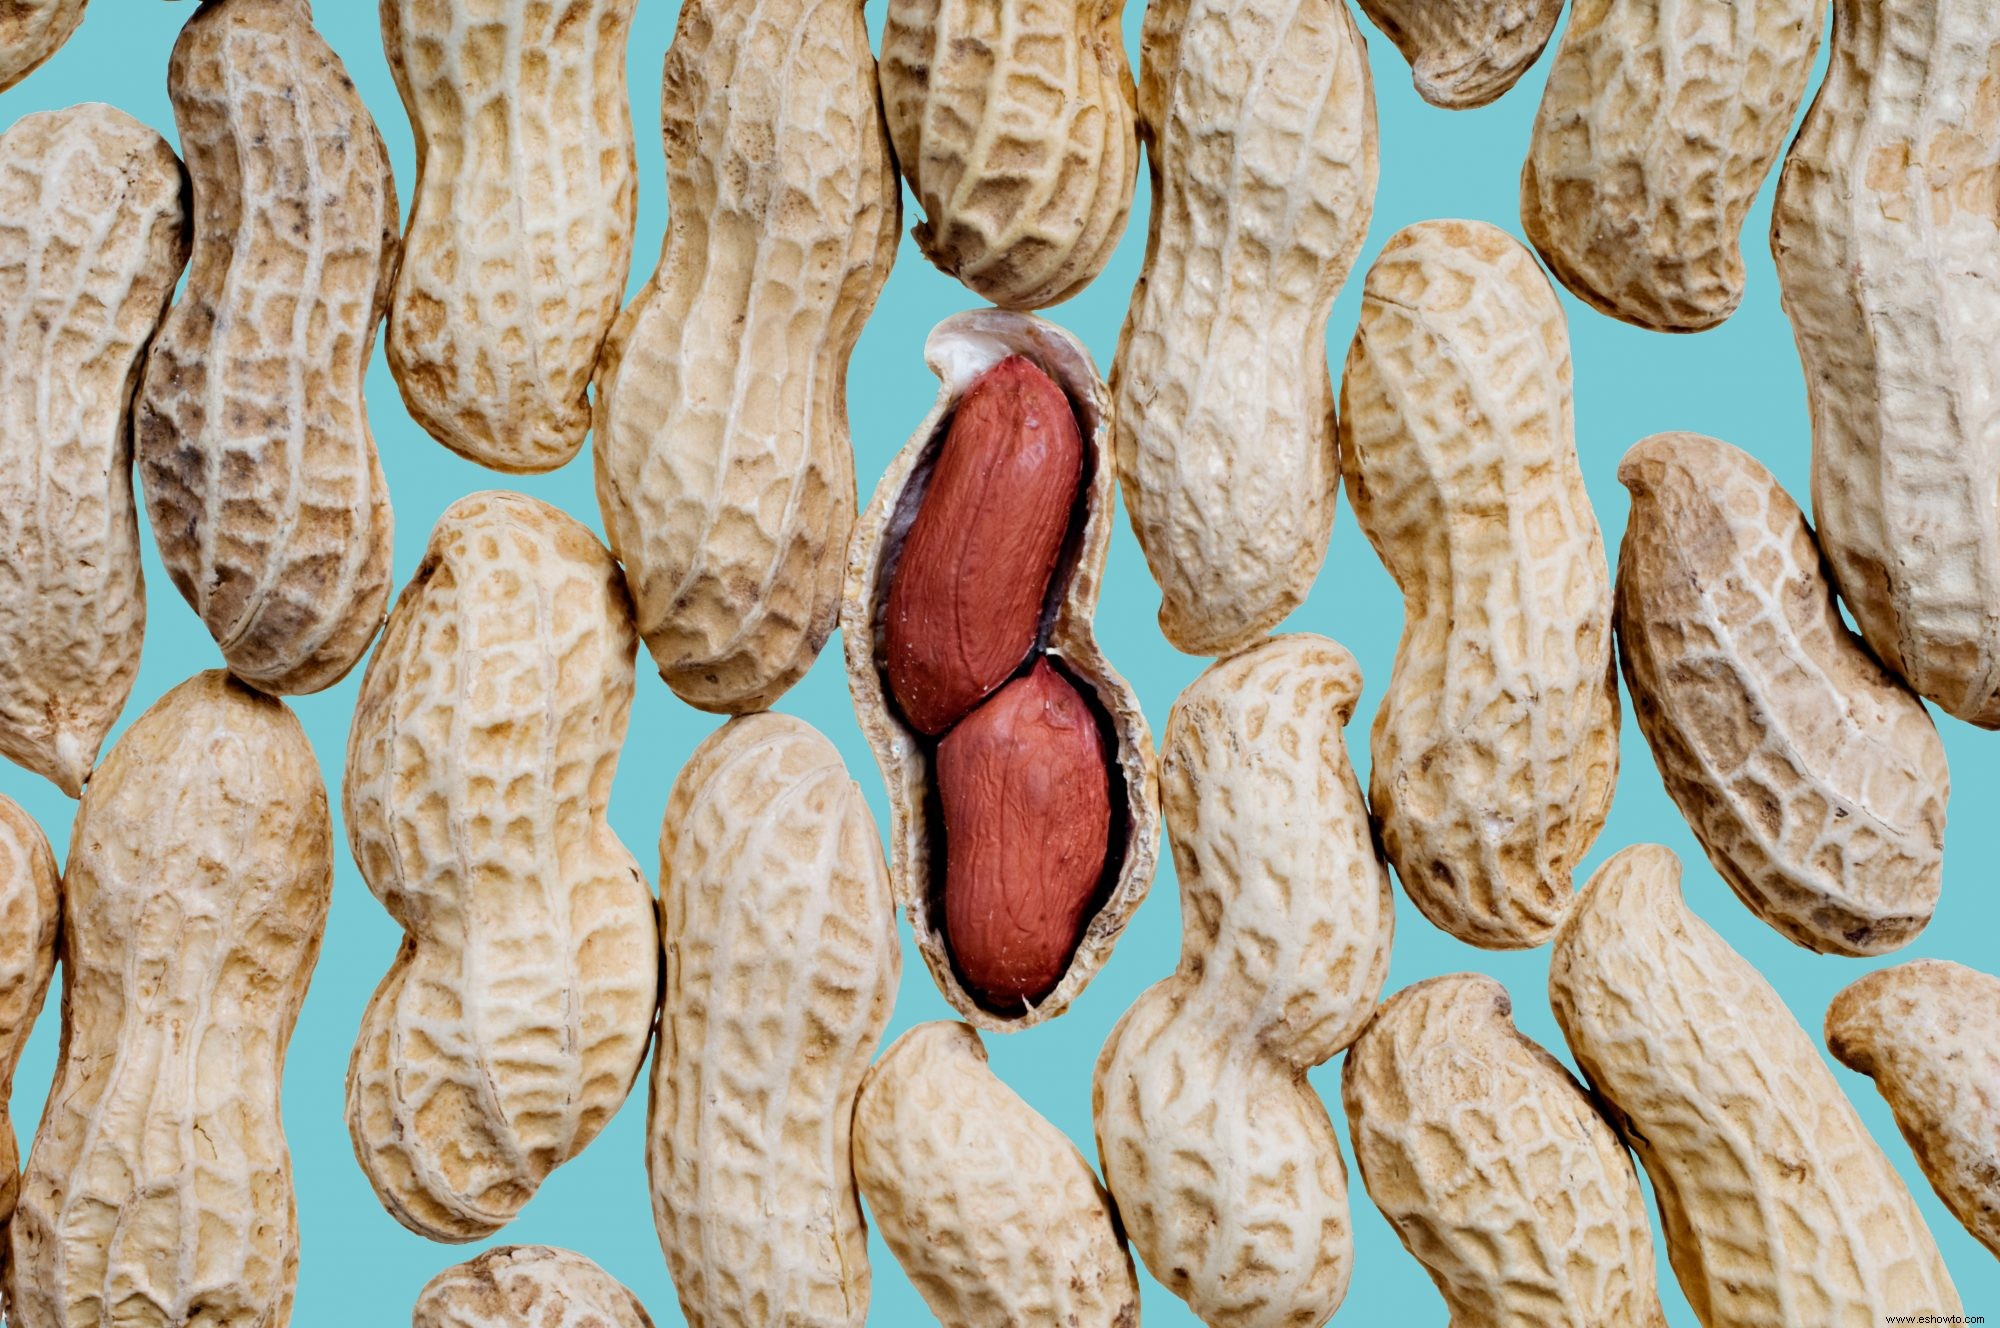 Los cacahuetes son una de las mejores fuentes de proteína de origen vegetal, según RD 